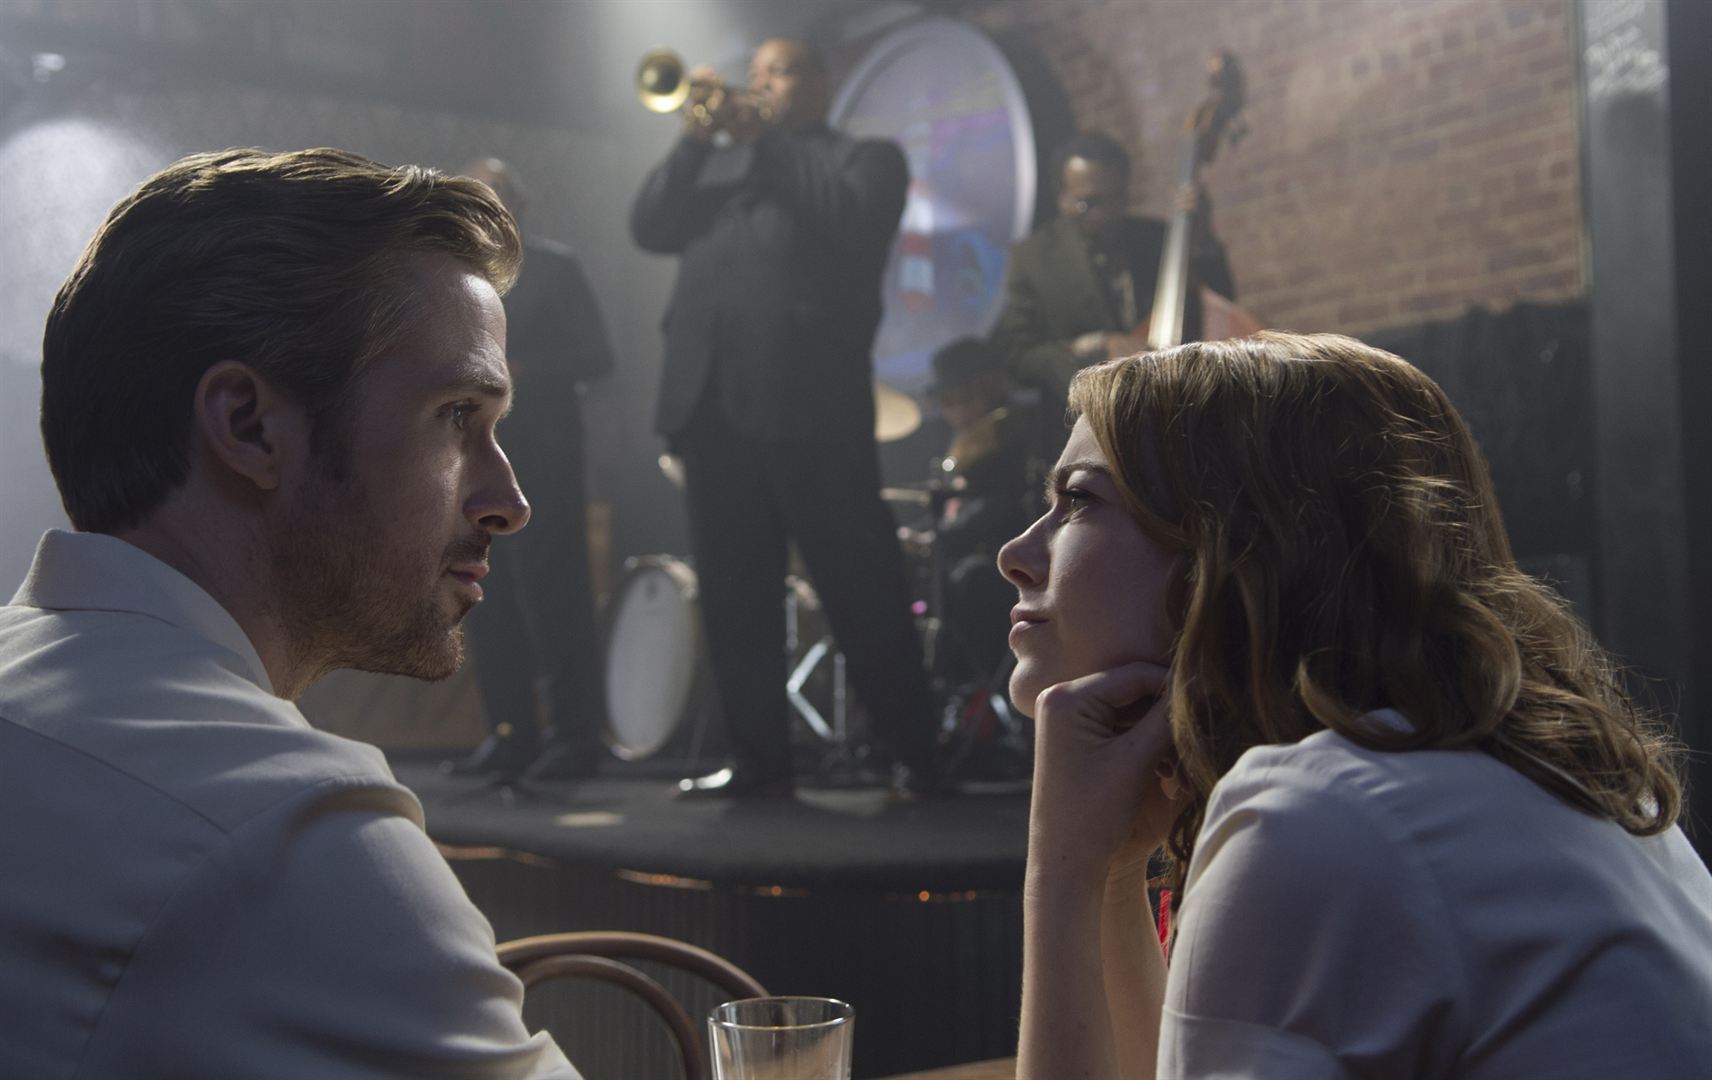 La la land - Ryan Gosling et Emma Stone - Blog culture, cinéma